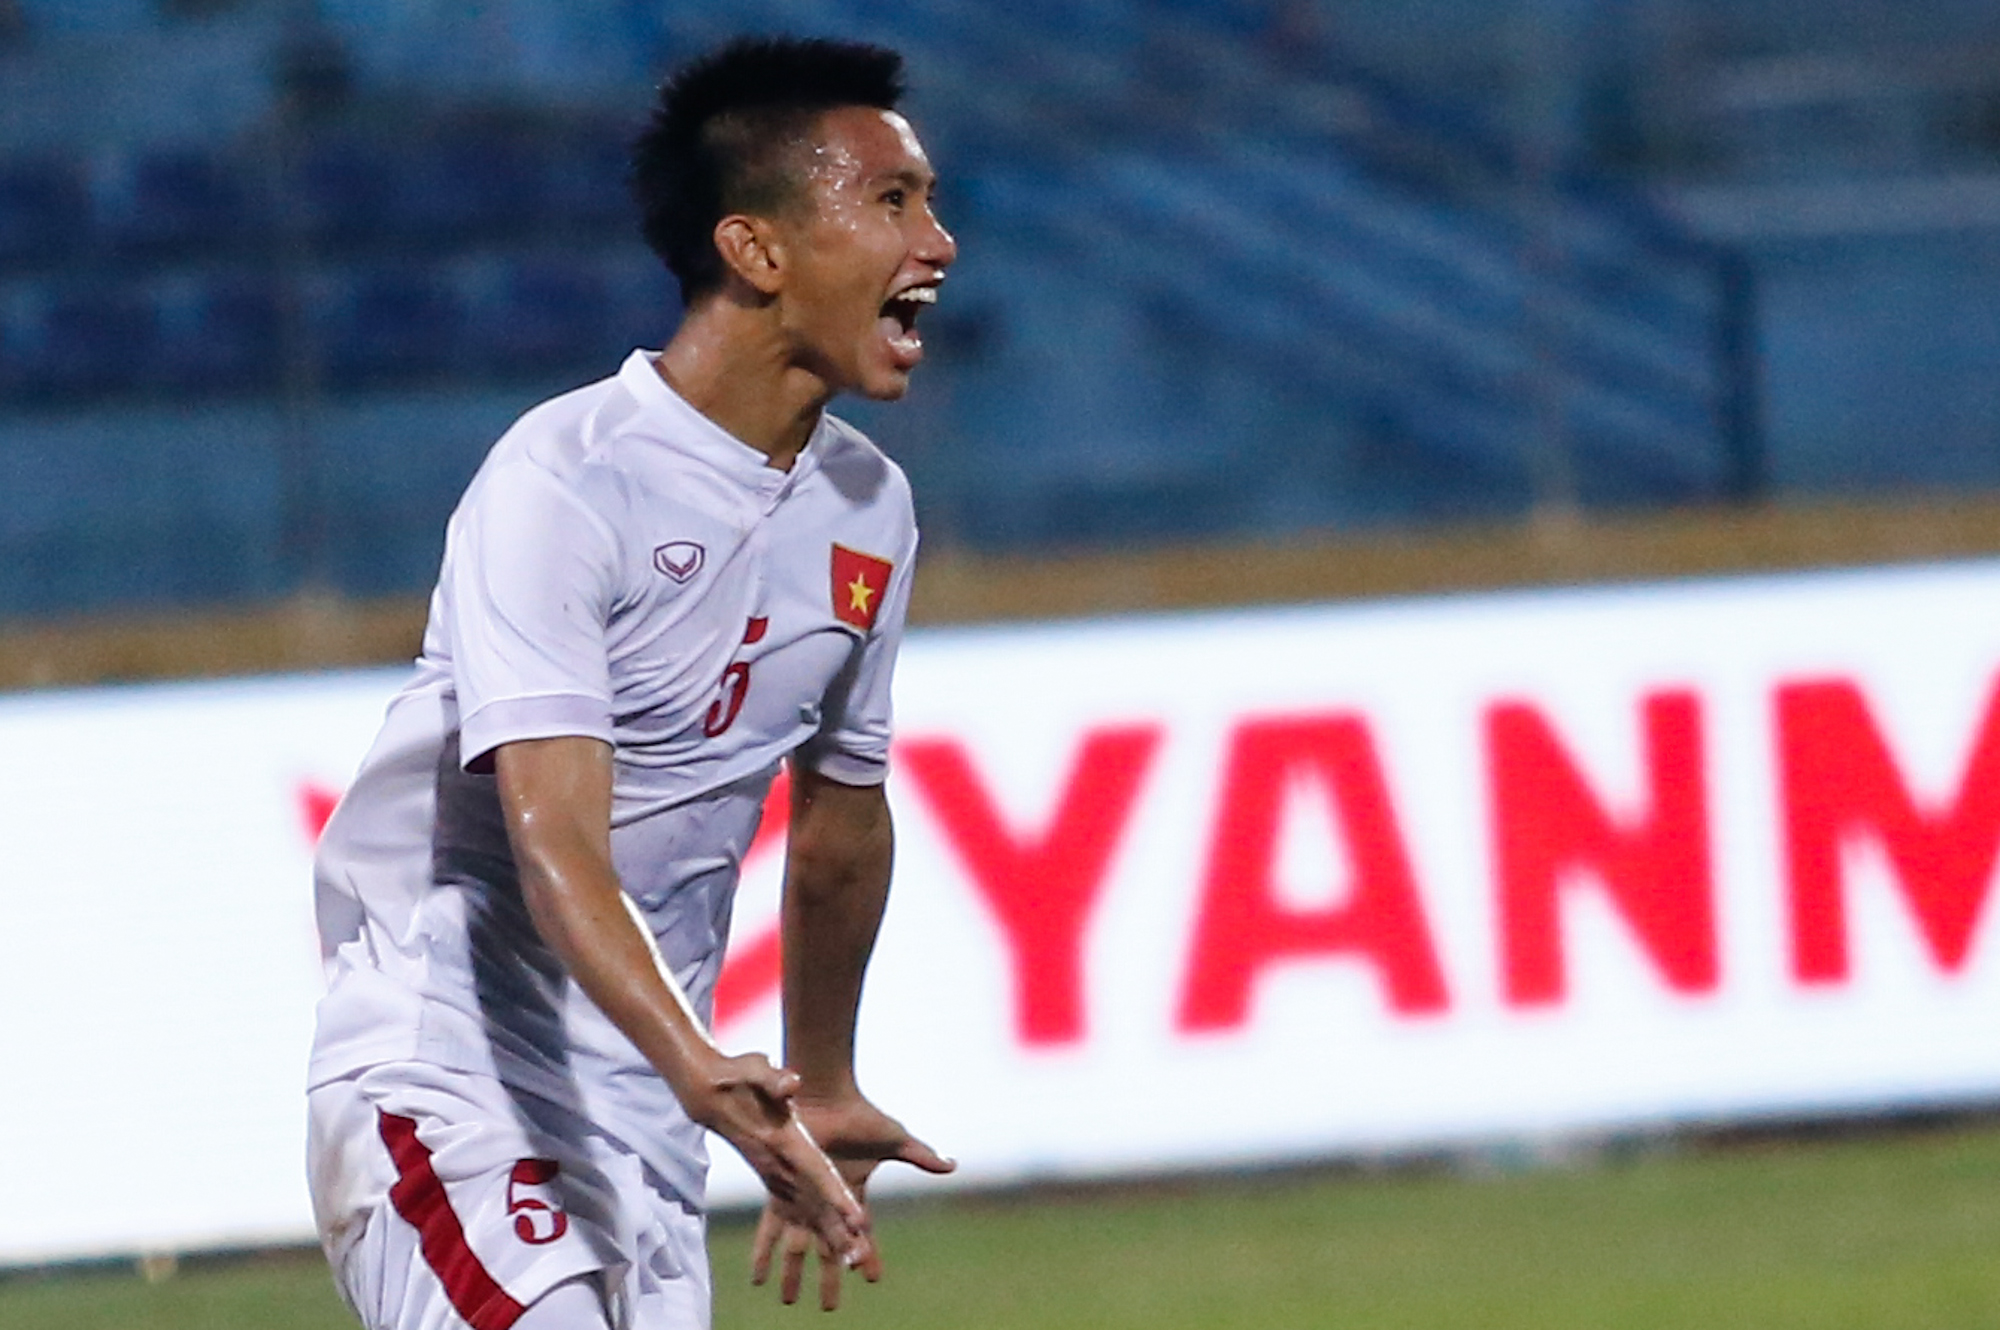 Đoàn Văn Hậu là người ghi bàn quyết định giúp U19 Việt Nam đánh bại Bắc Triều Tiên. Mùa này, anh đã được đôn lên V-League. (Ảnh: Minh Chiến/Vietnam+)